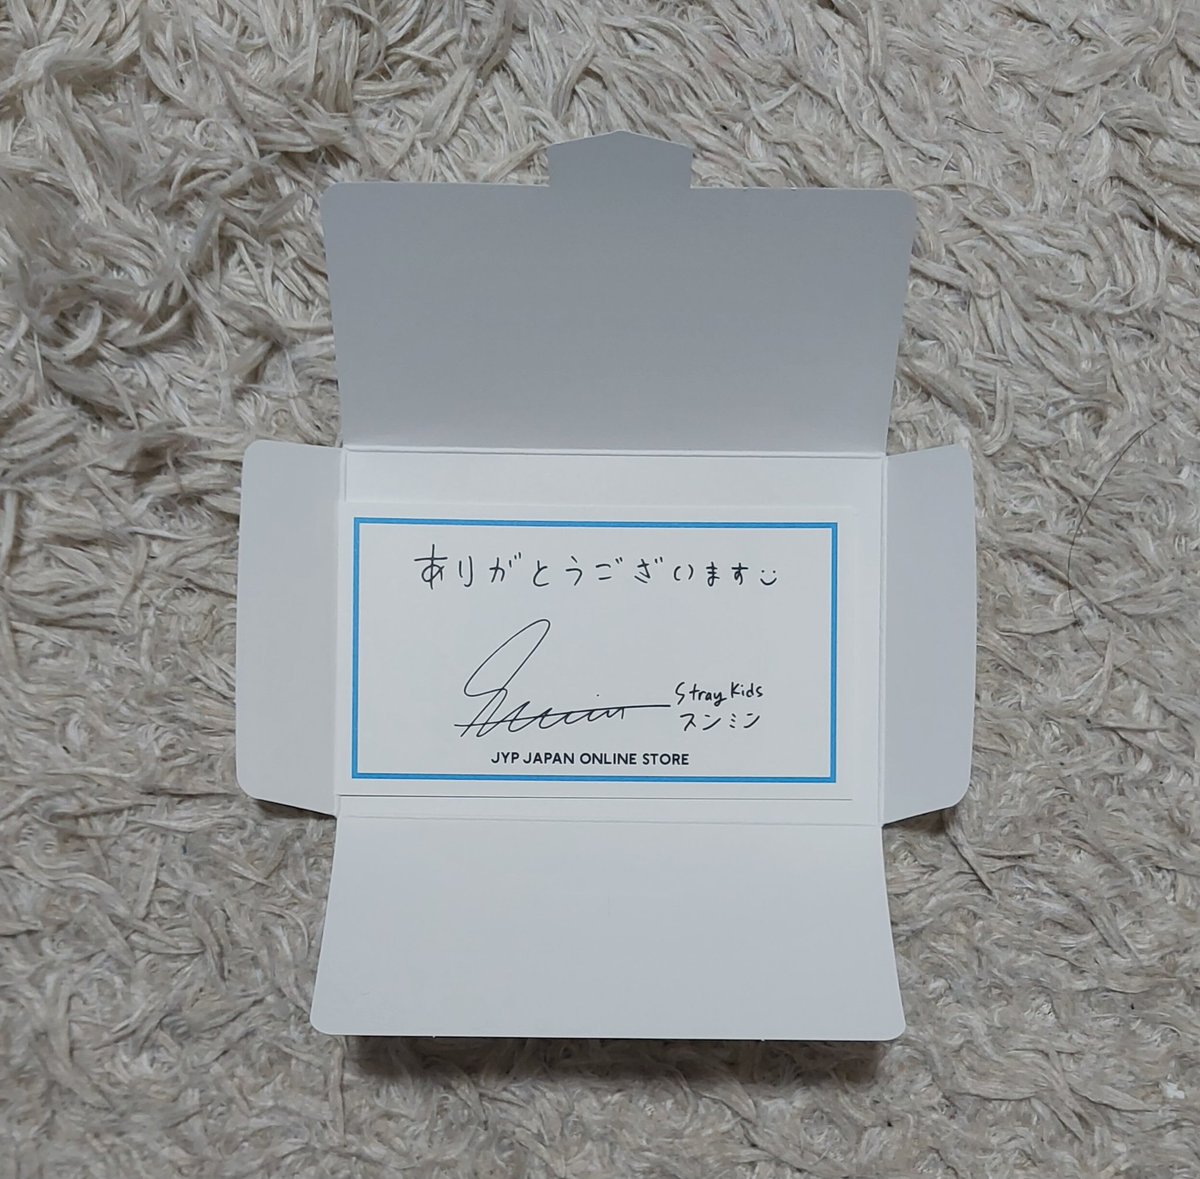 【ゆるっと募集】
JYP JAPAN ONLINE STOREの購入特典Stray Kids スンミンのサンキューカードを欲しい方に差し上げます
郵送料をご負担いただくかたちになりますが、それでもよい方いらっしゃいましたら、リプにてお知らせください
よろしくお願いします🙇
#StrayKids #サンキューカード